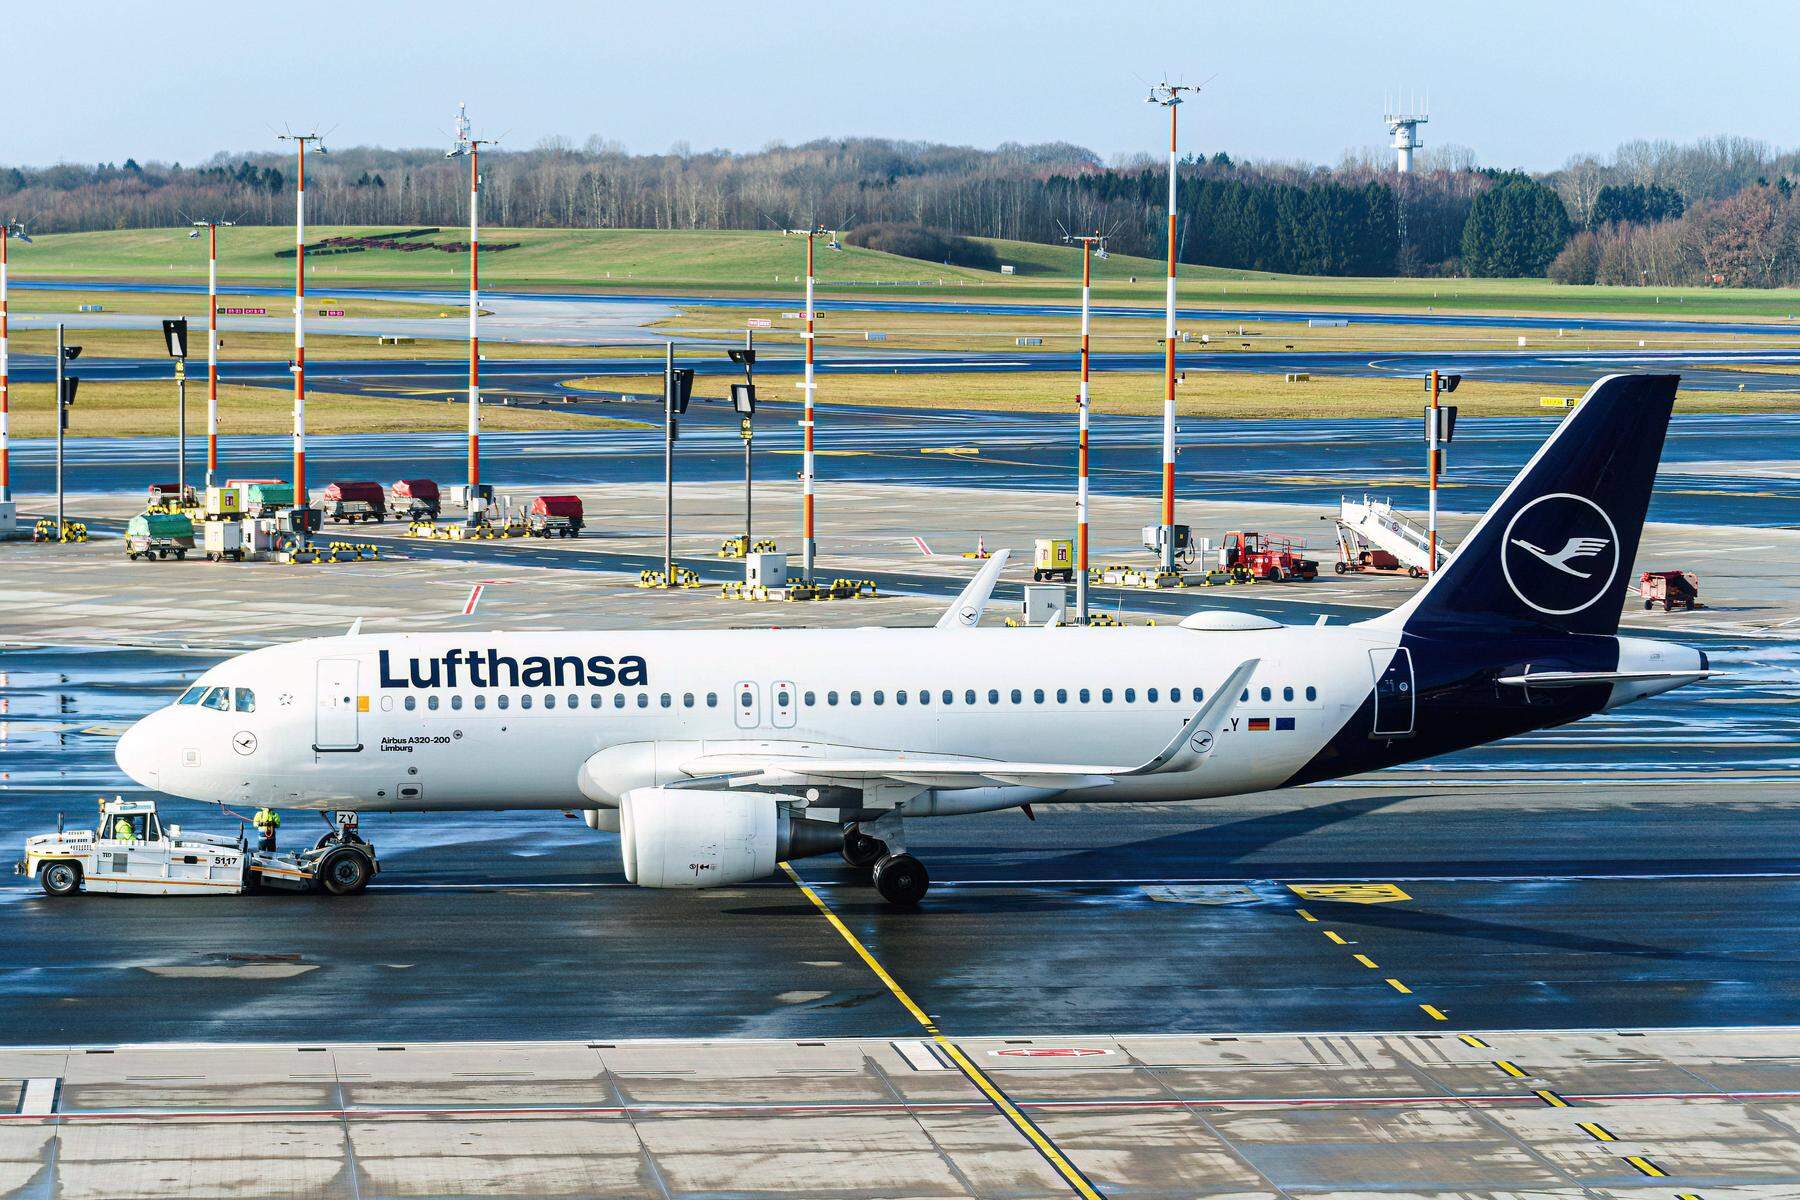 Milliardenschwere Staatshilfen: EU-Kommission hat die Lufthansa am Radar: Untersuchung wegen Corona-Hilfen eingeleitet